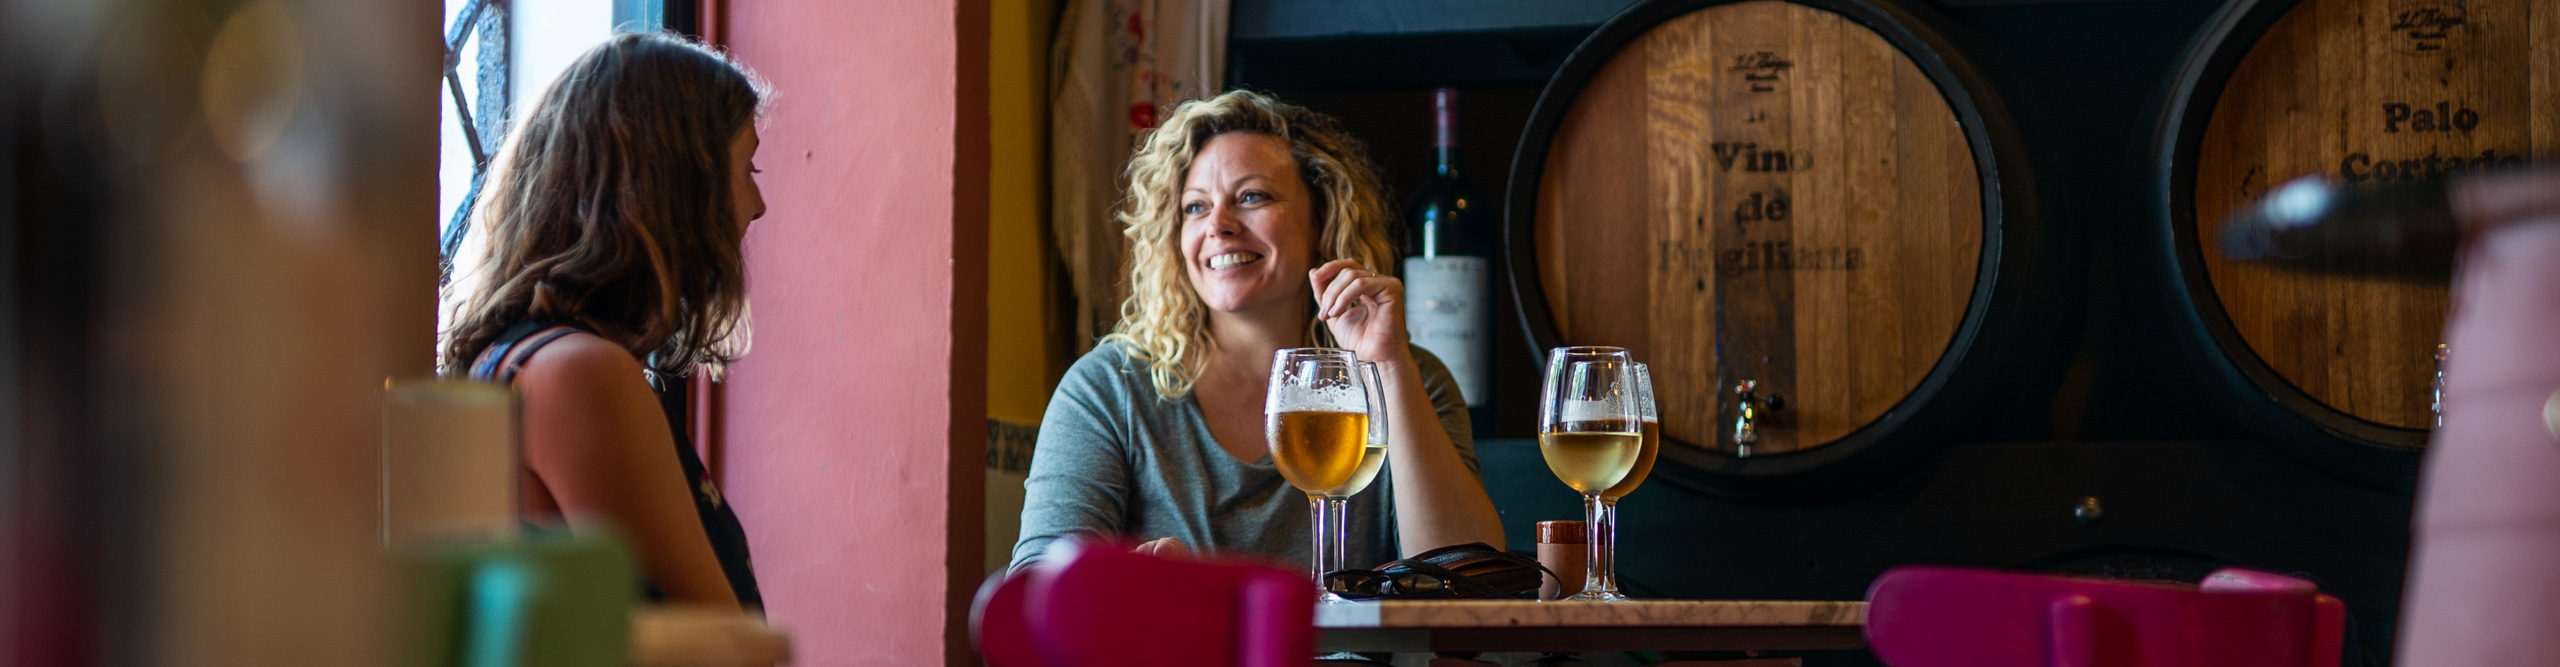 woman drinking wine in a bar in Spain 